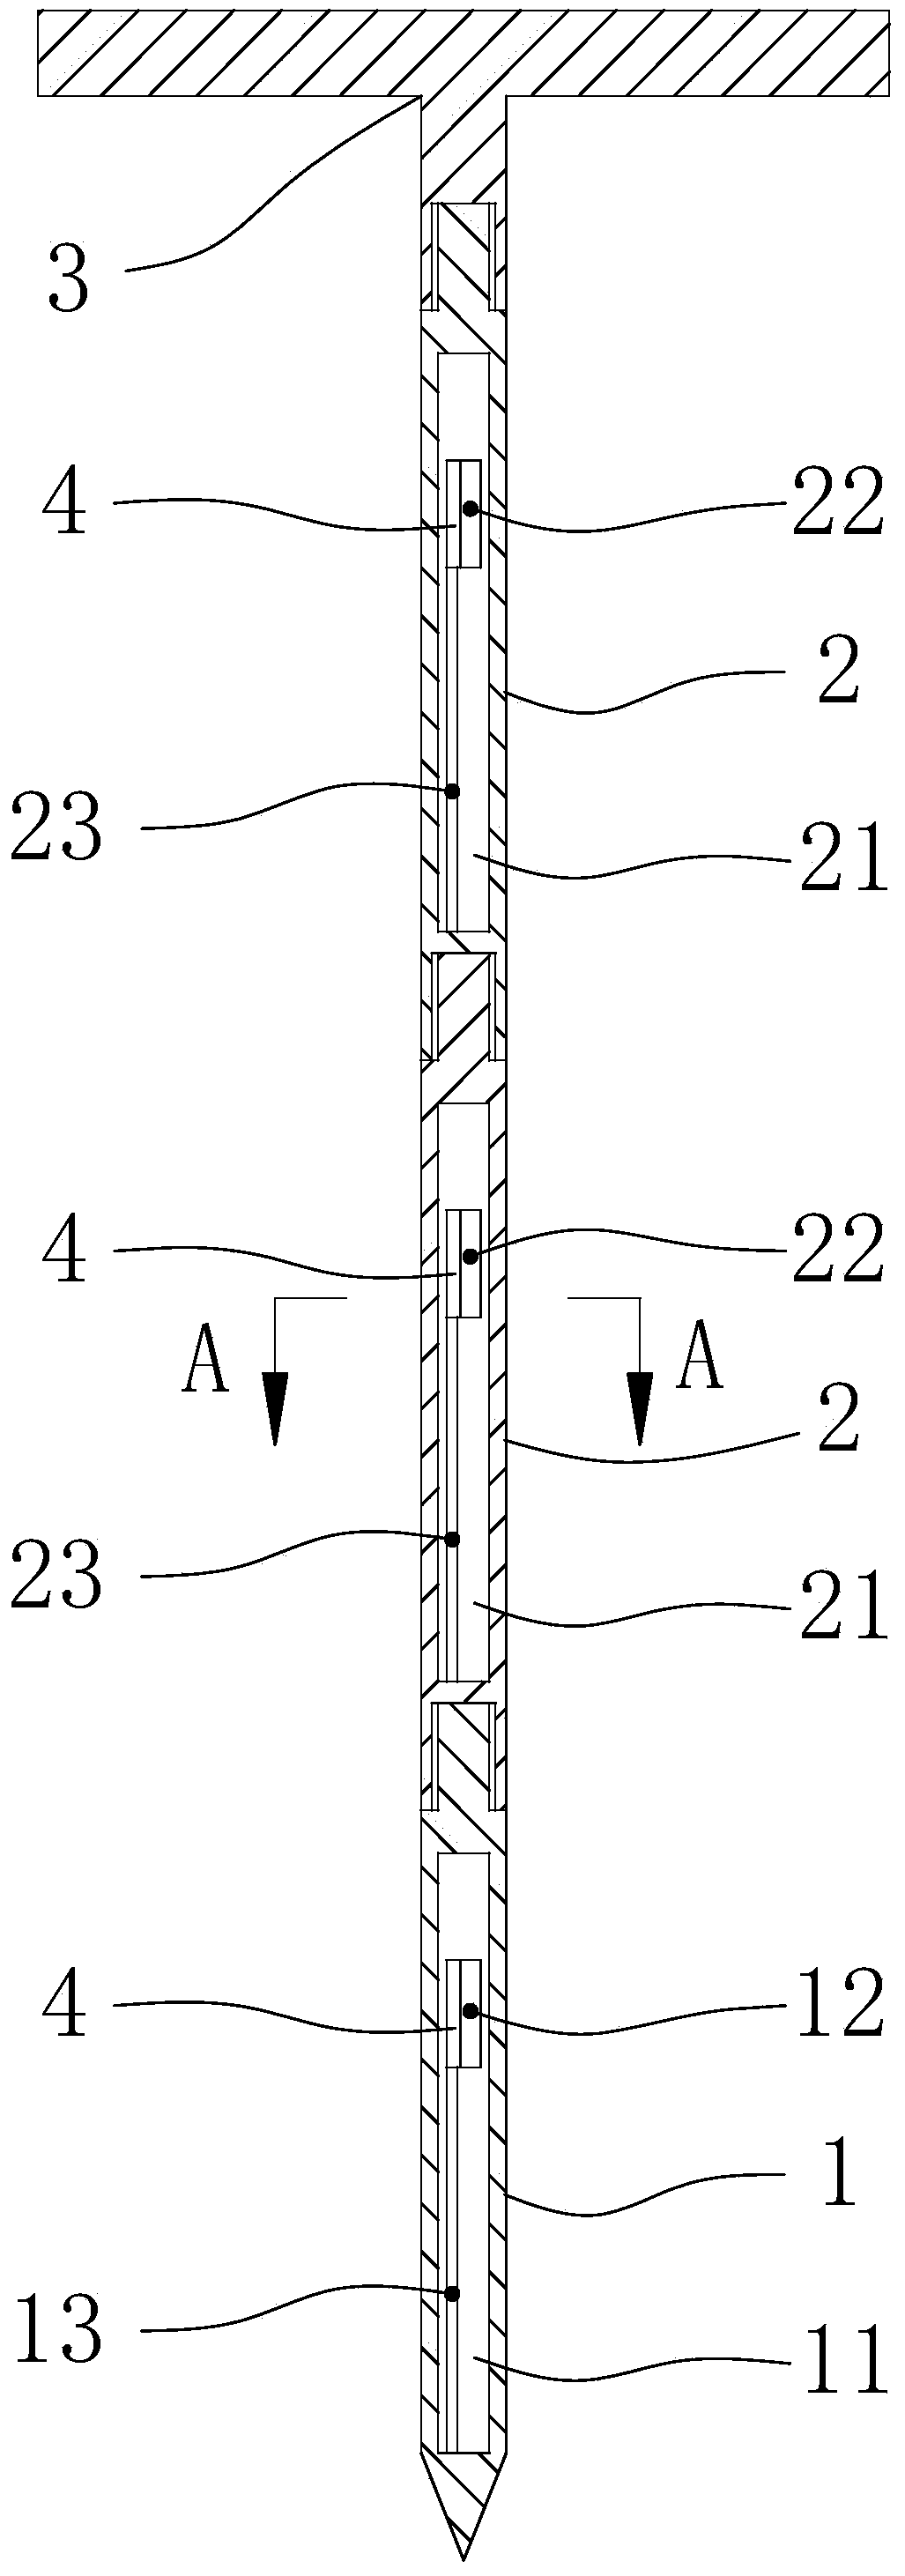 Multi-point distiller's grain sampler and sampling method